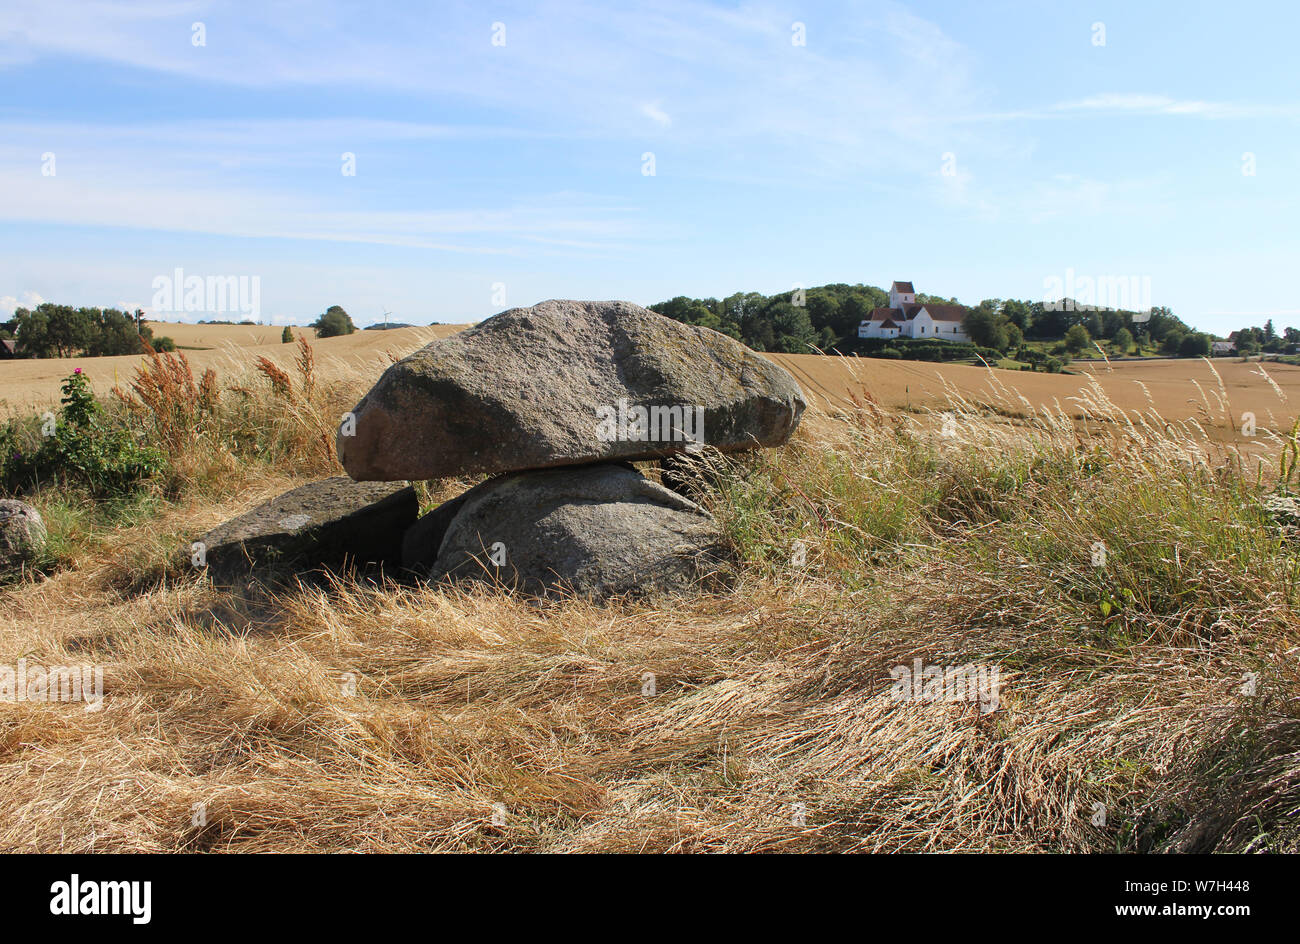 Dolmen presso Kong umilia grave e umile chiesa in background con circostante scena rurale. Langeland, Danimarca. Foto Stock